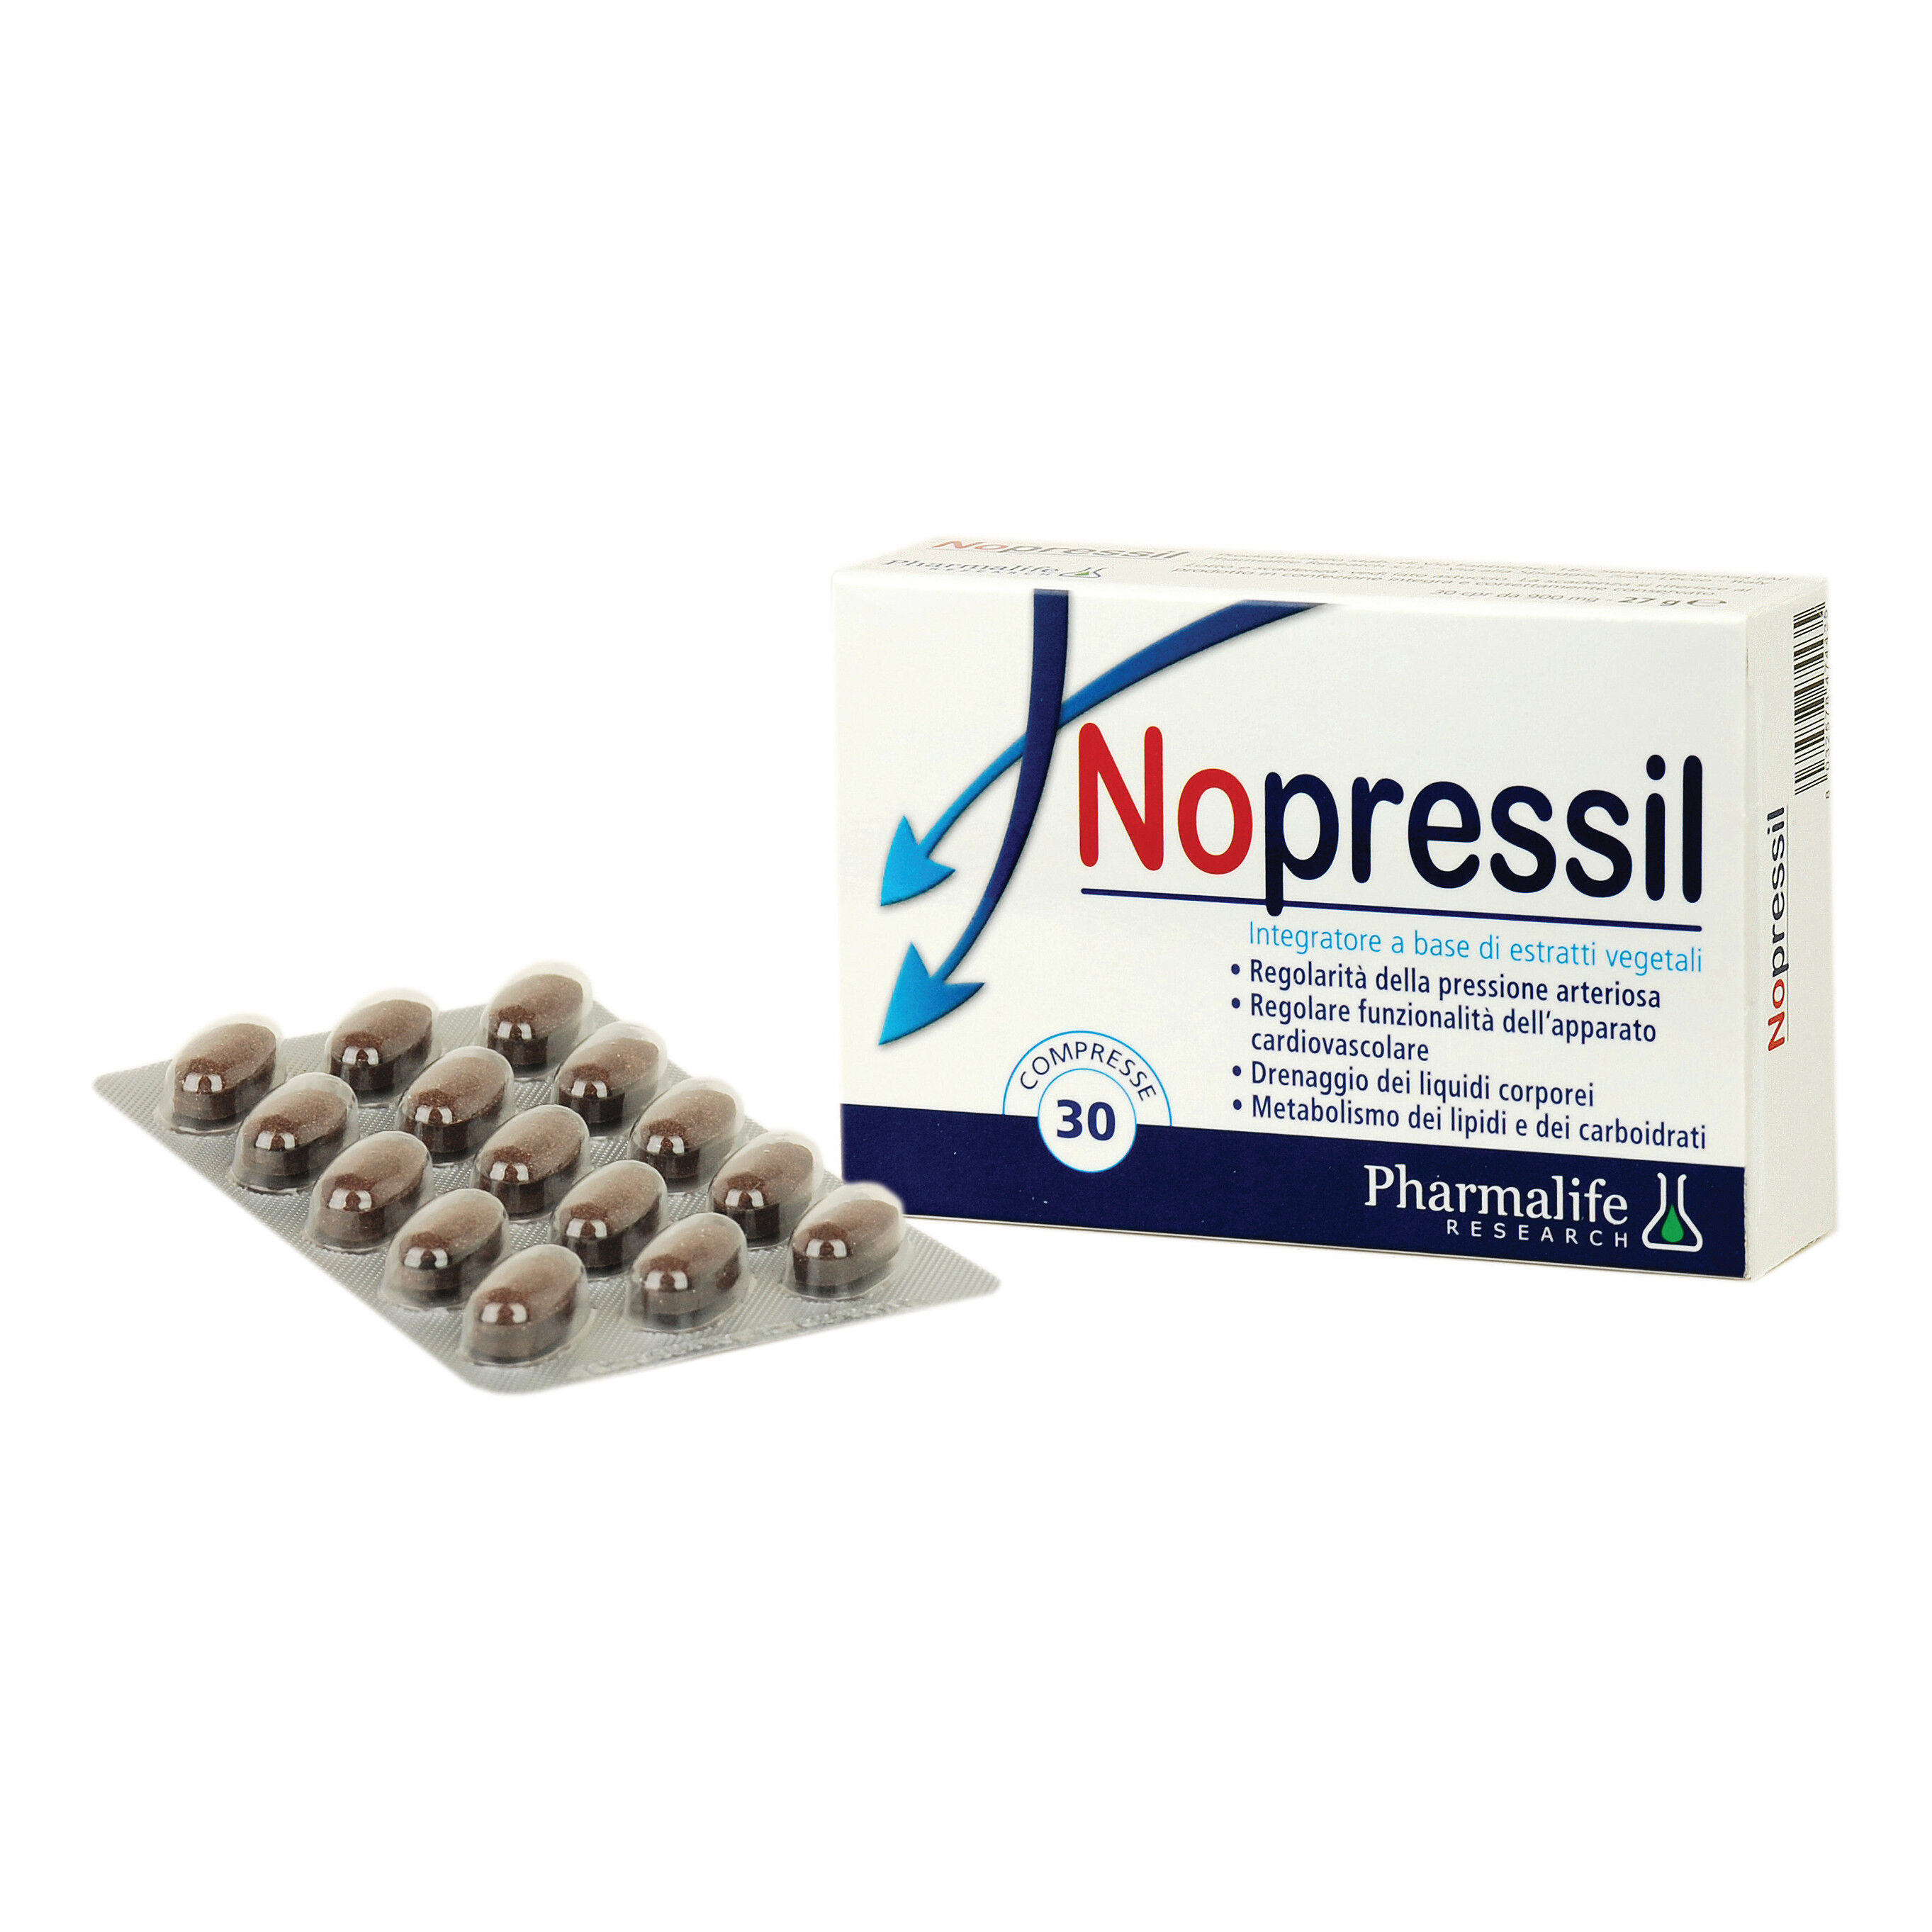 Pharmalife Research Srl Nopressil 30 Compresse